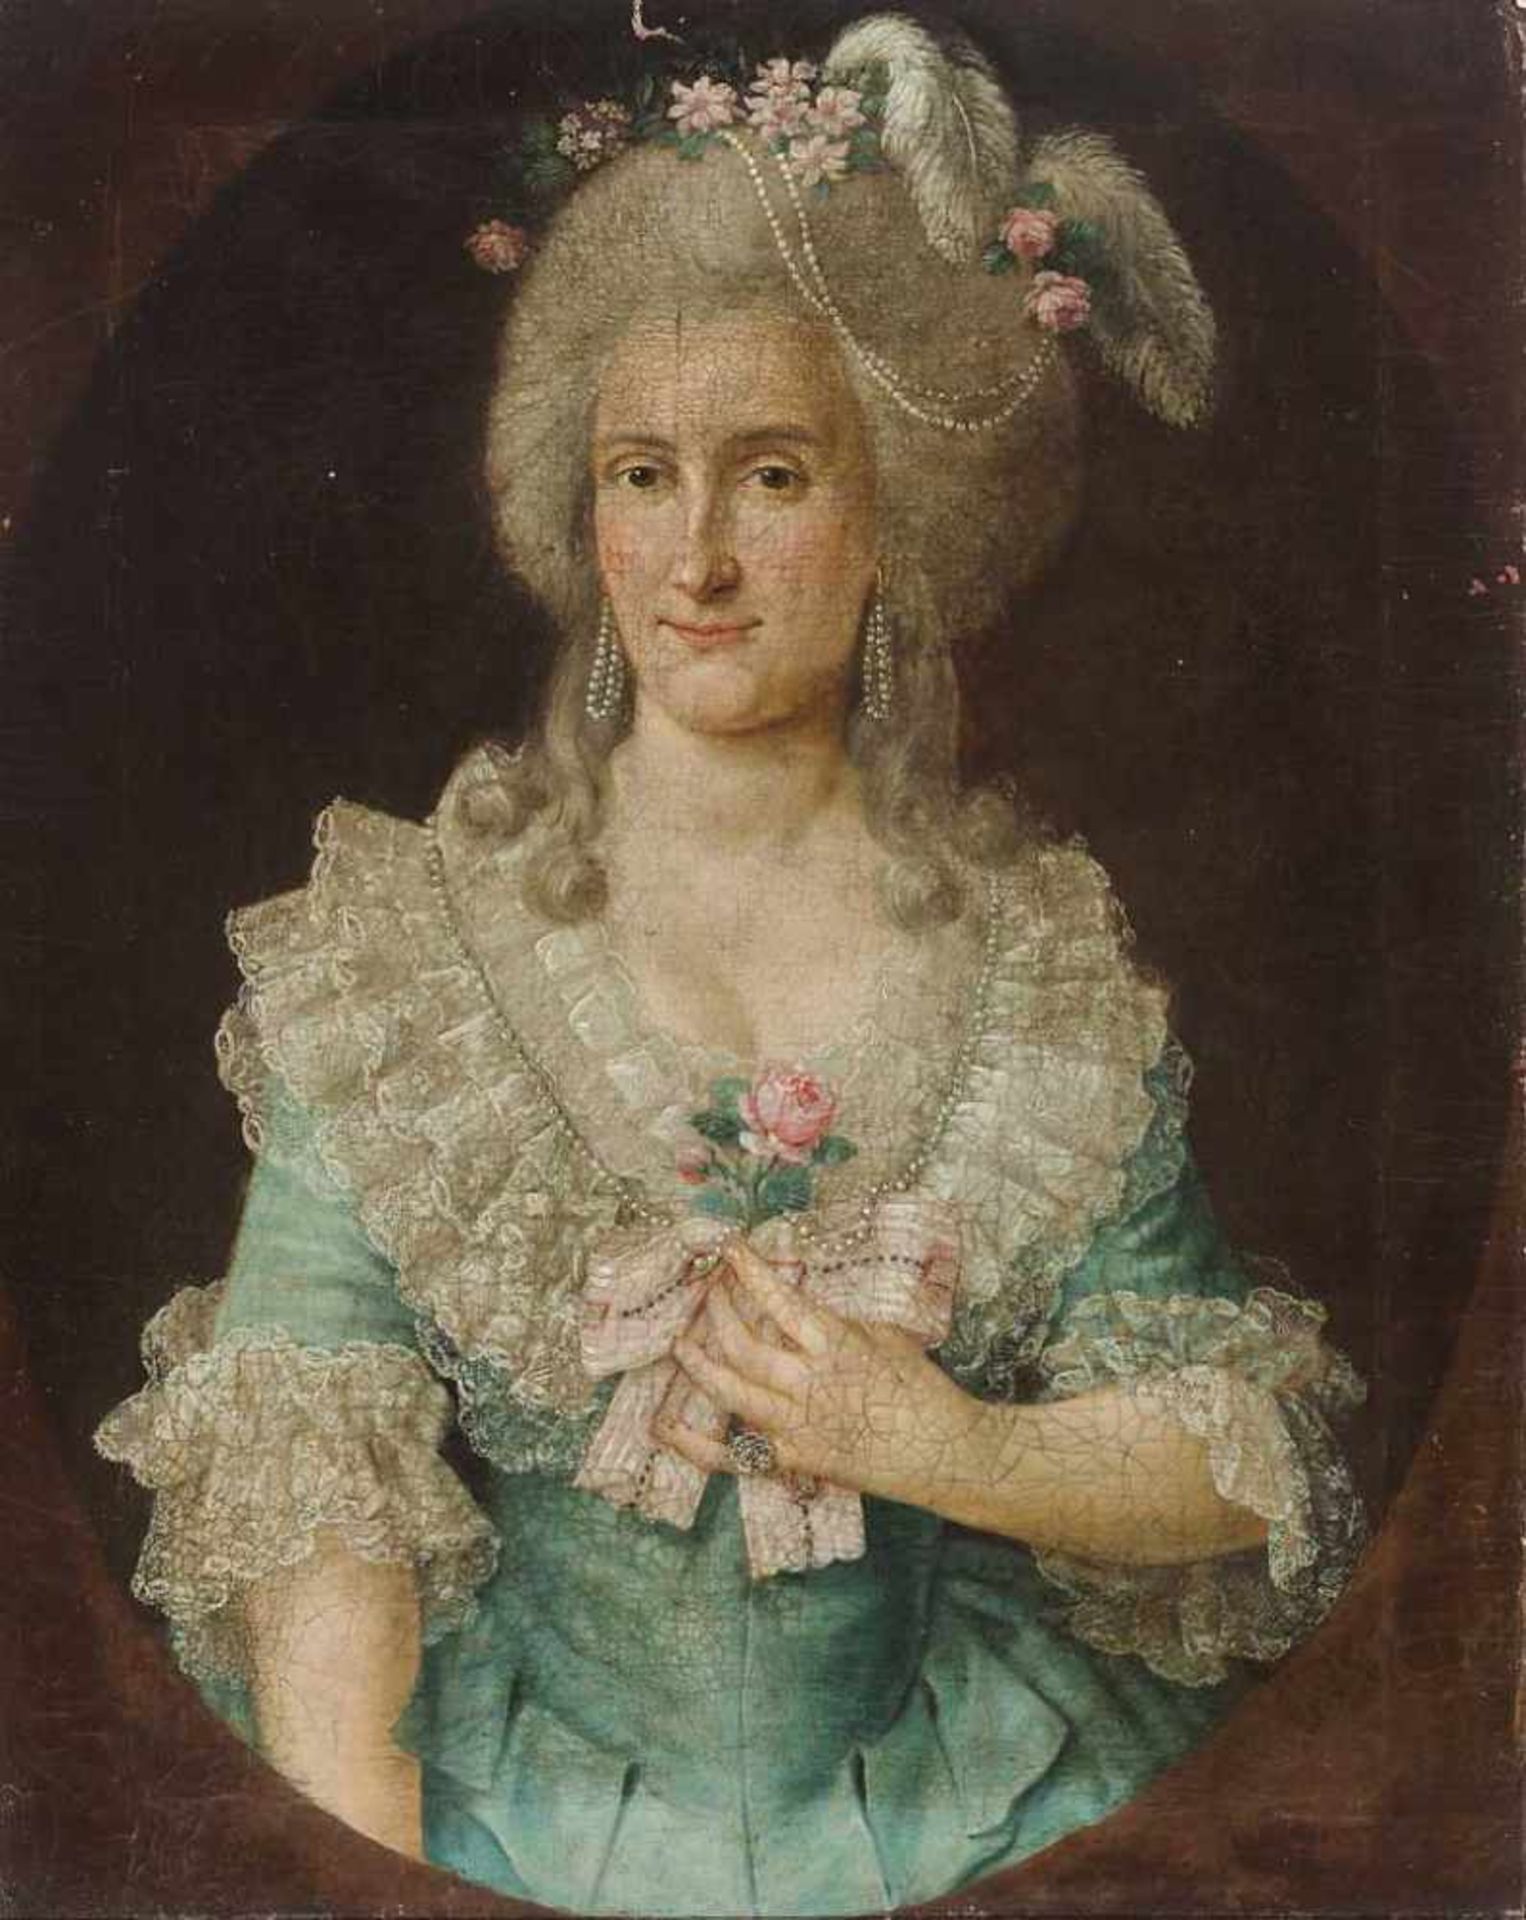 Portraitist des 18. Jh. Portrait einer vornehmen Dame; Rs. bez. "Franziska von Hohenstein"?. Reicher